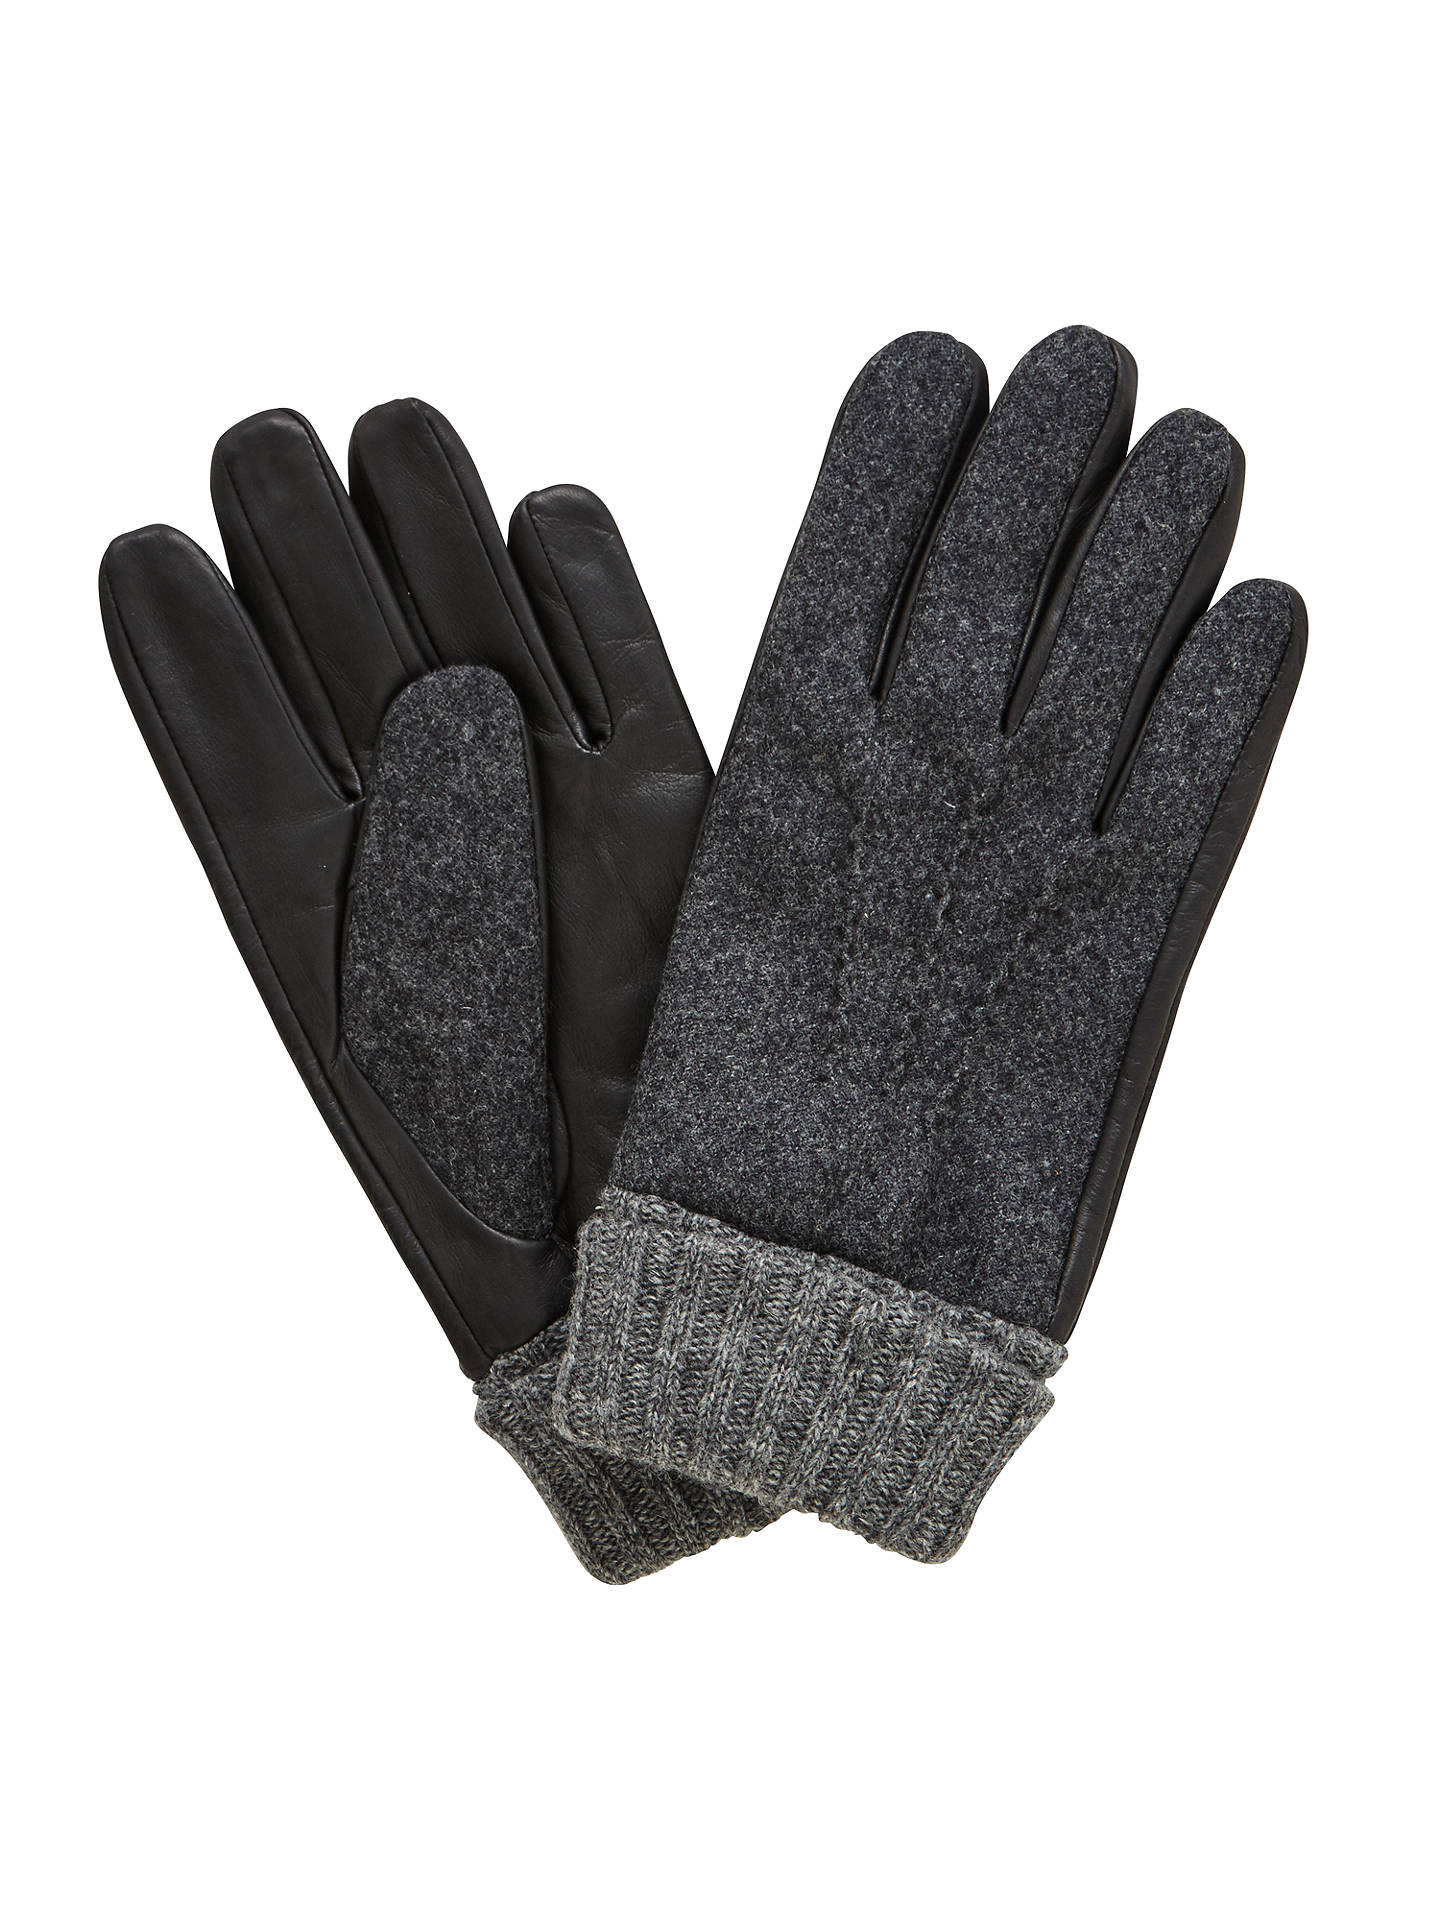 John Lewis Wool Leather Gloves, Black at John Lewis & Partners